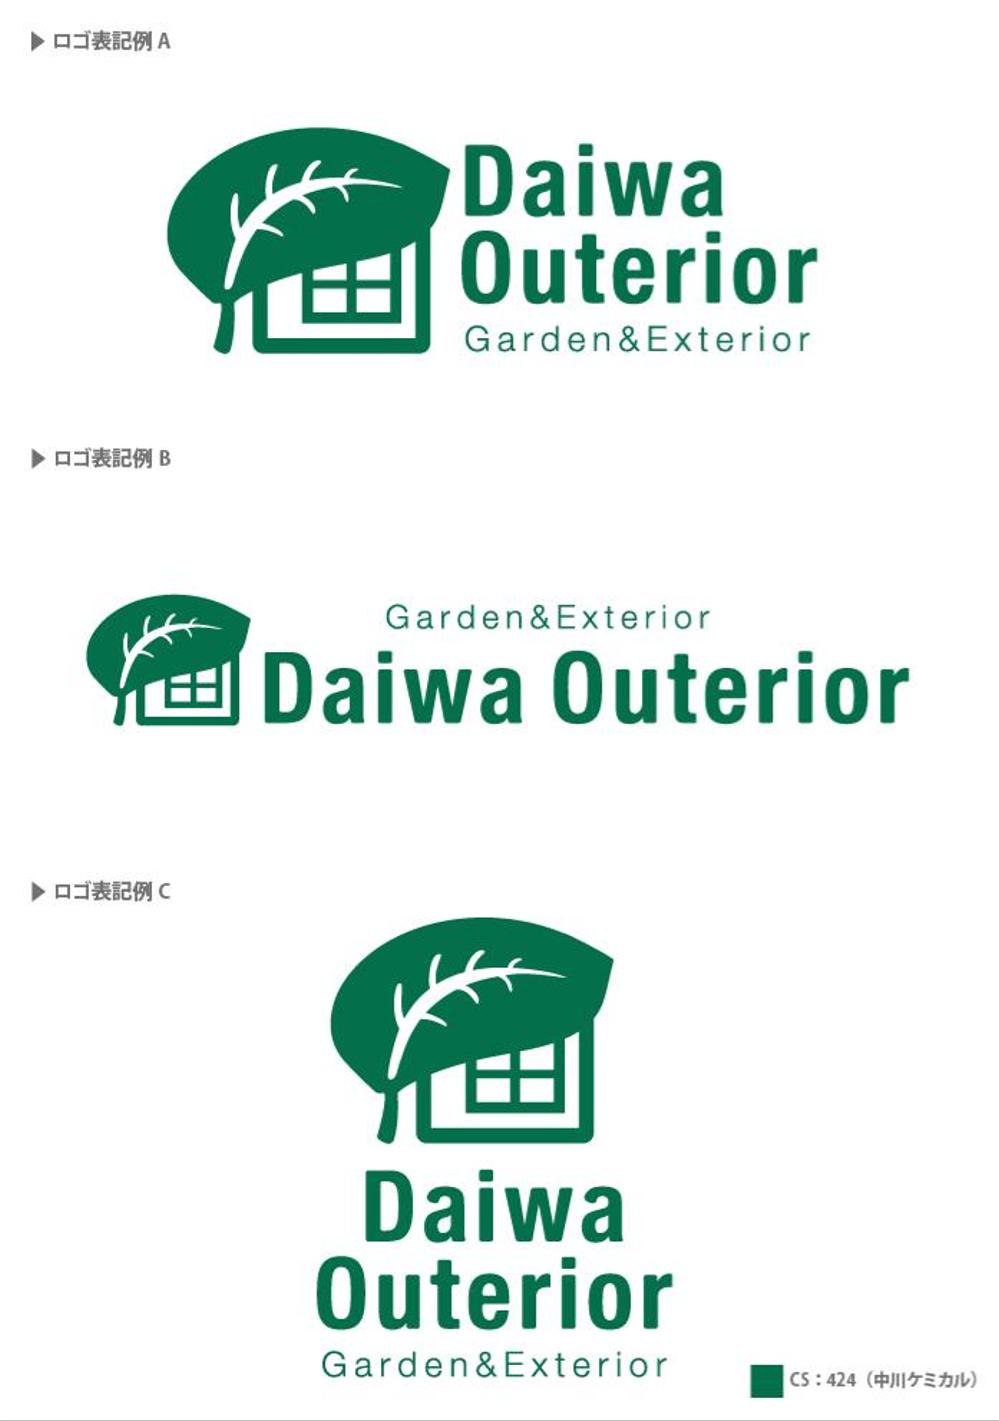 ガーデン工事業の社名ロゴ作成をお願いします